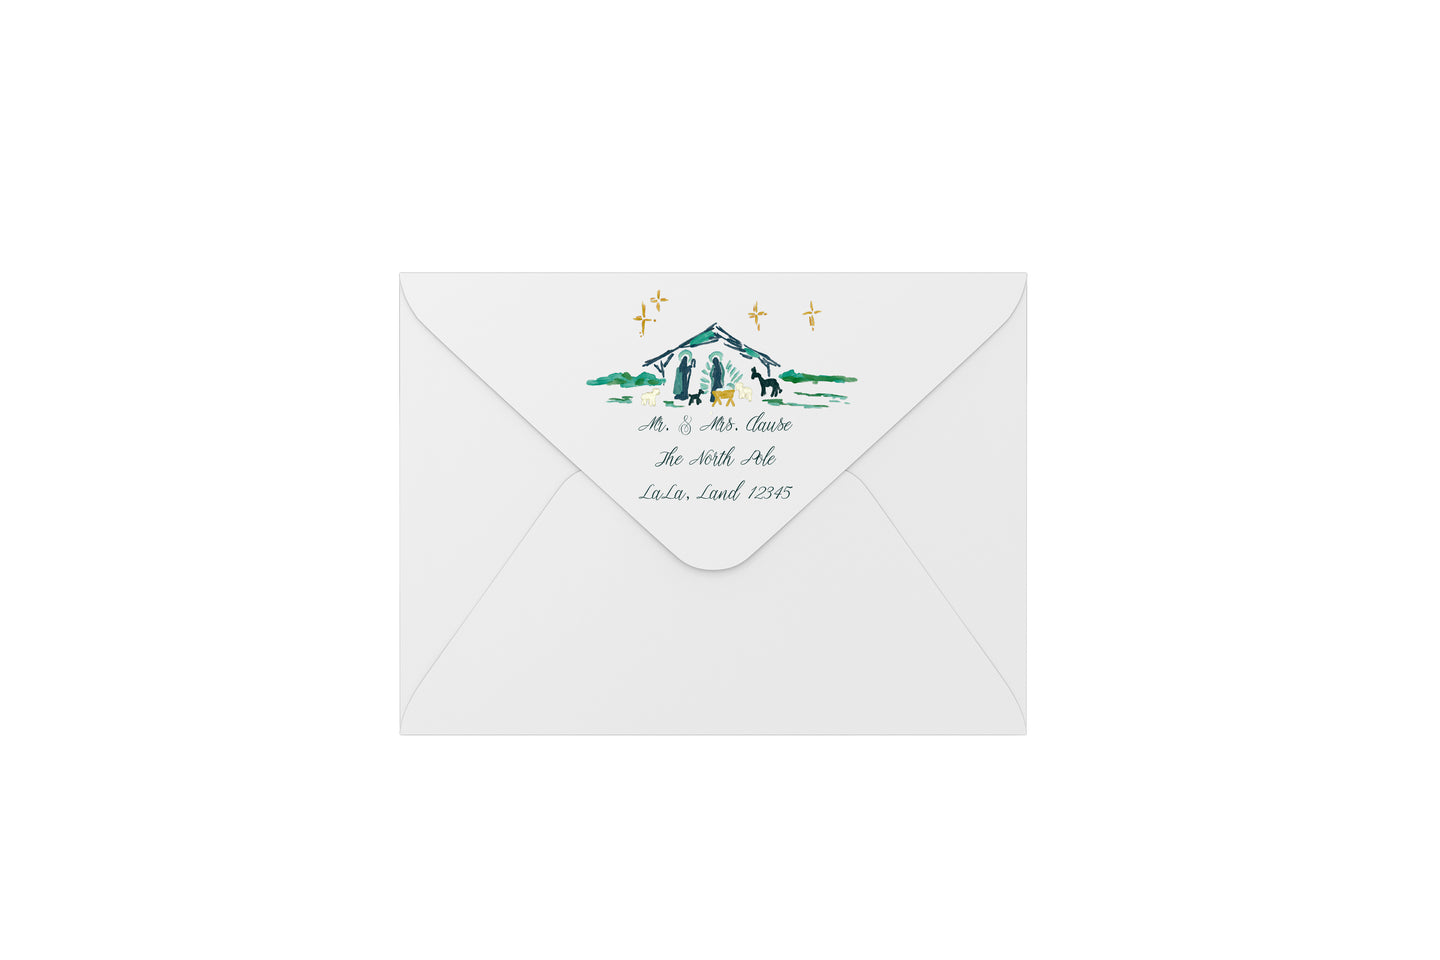 nativity scene envelopes - address printing